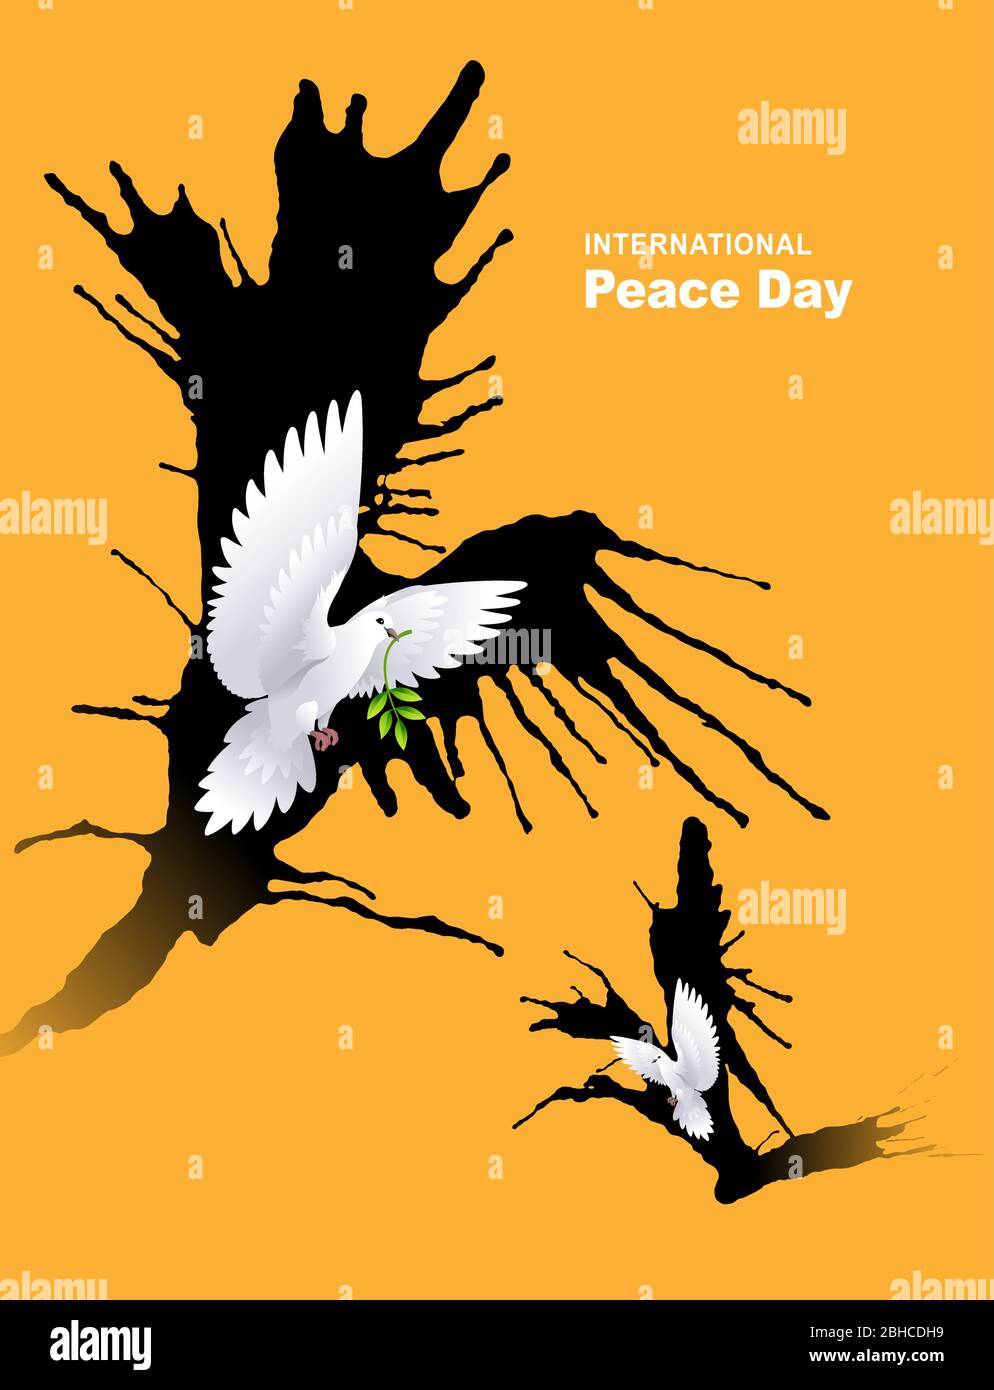 Internationaler Friedenstag, Olivenzweig und fliegende Taube Stock Vektor